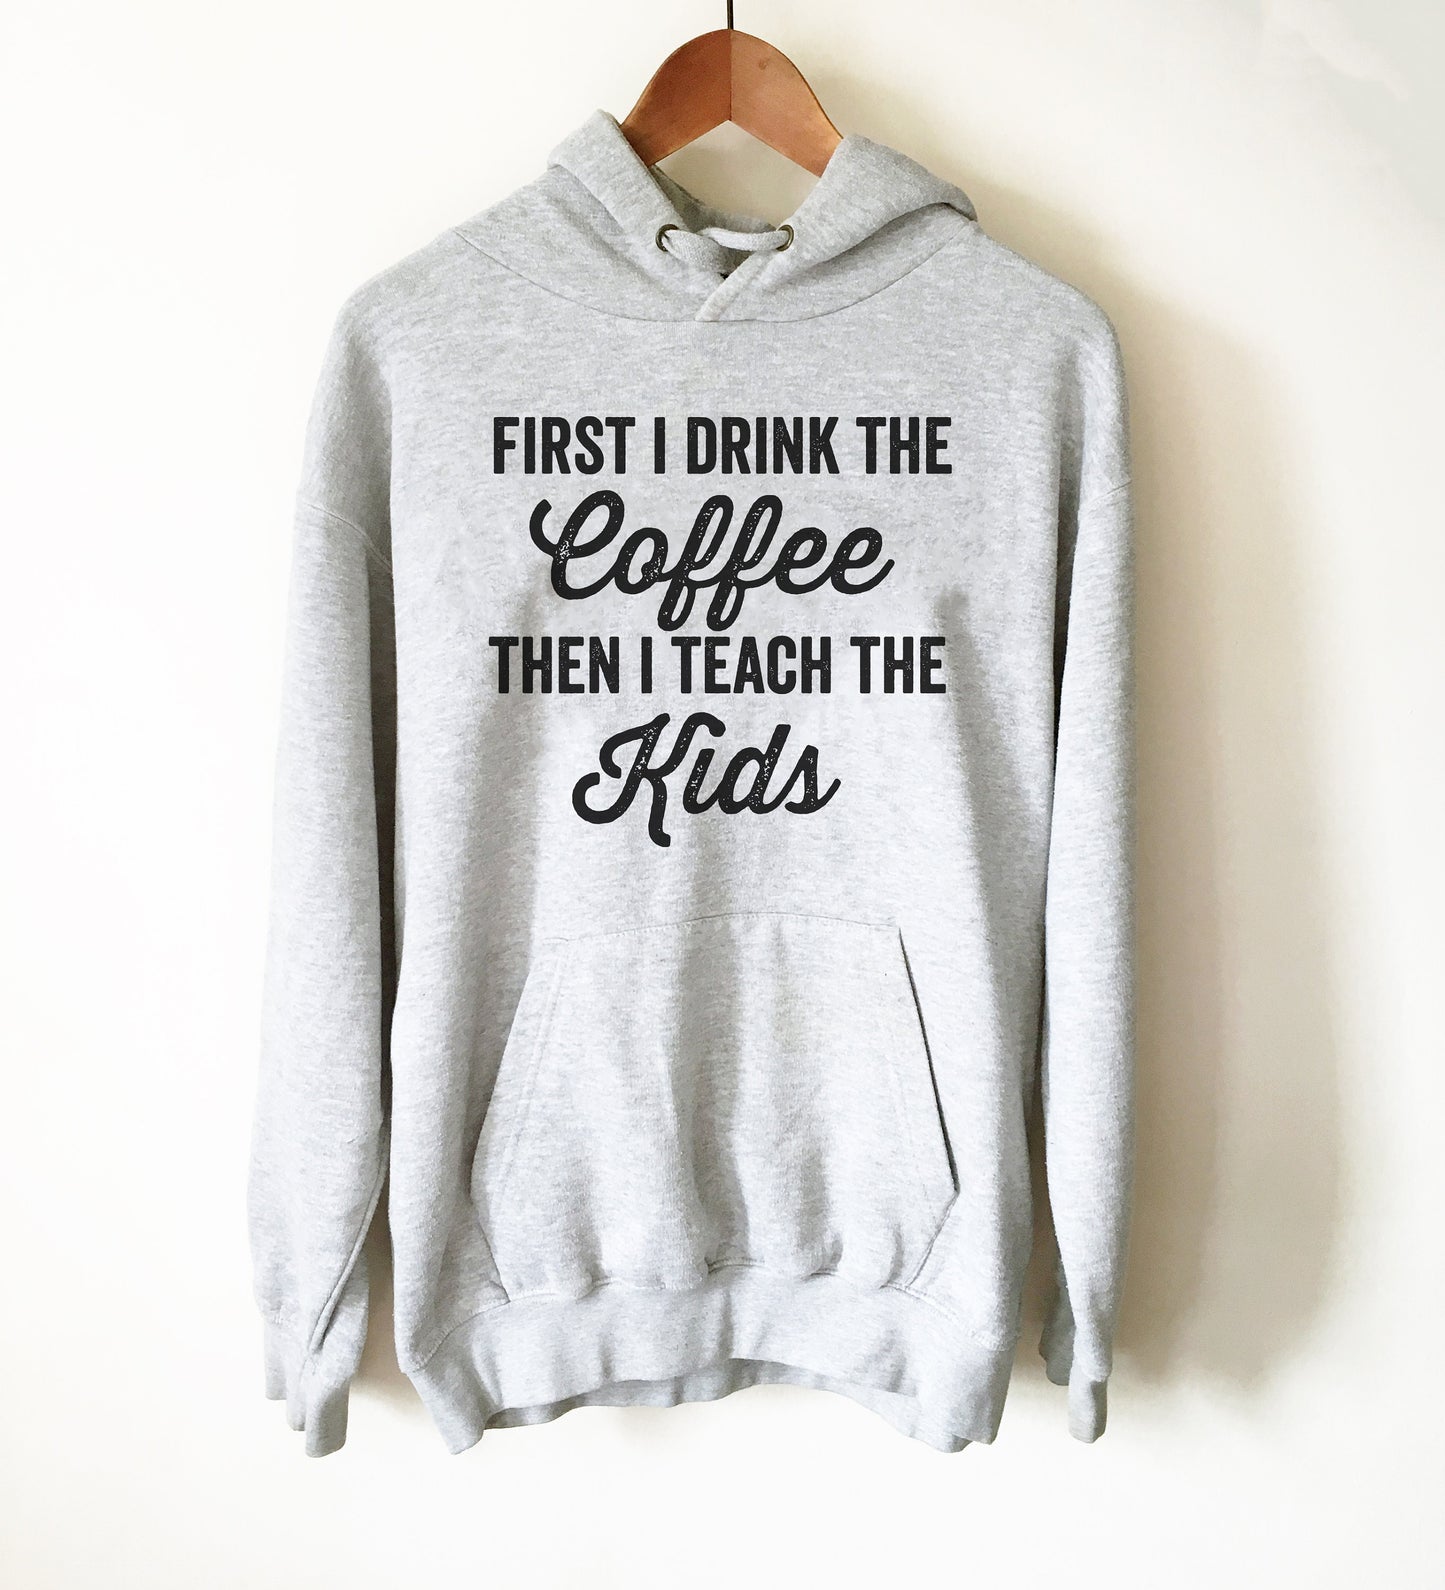 First I Drink The Coffee Then I Teach The Kids Hoodie - Teacher life shirt, Teacher shirt, Teacher appreciation, Funny teacher shirt